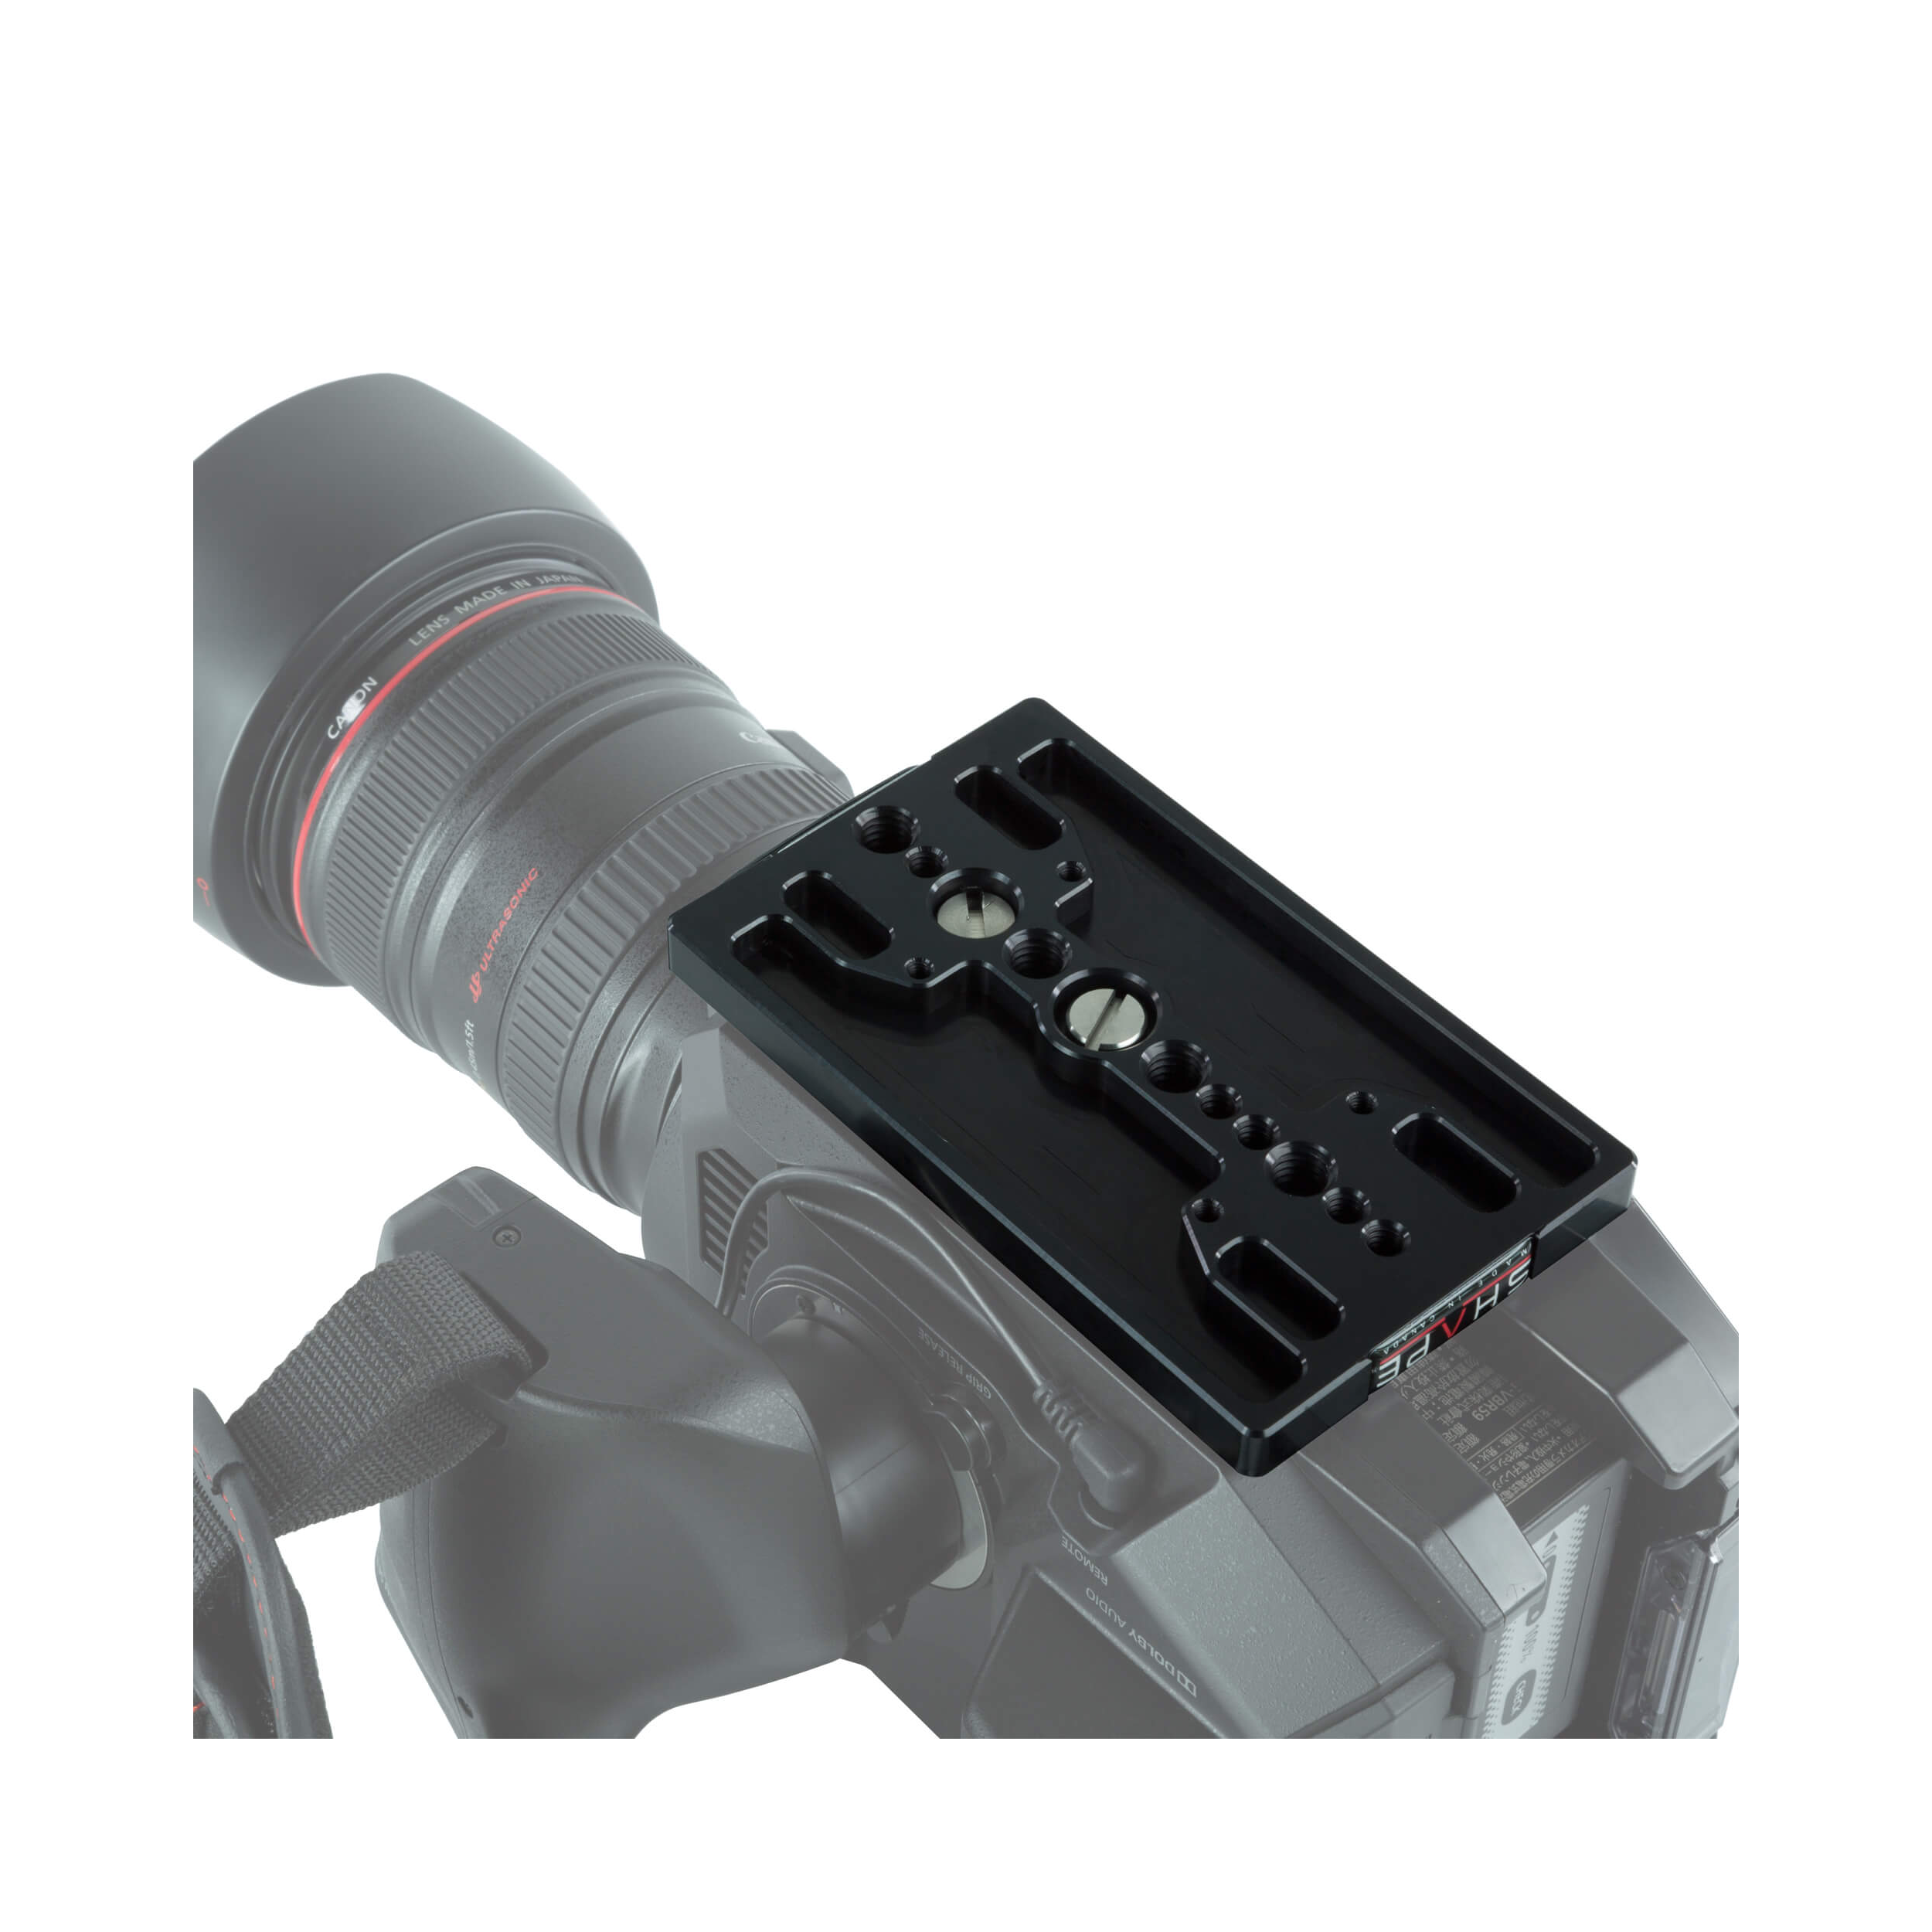 SHAPE Shoulder Rig Bundle with Follow Focus Pro for Panasonic AU-EVA1